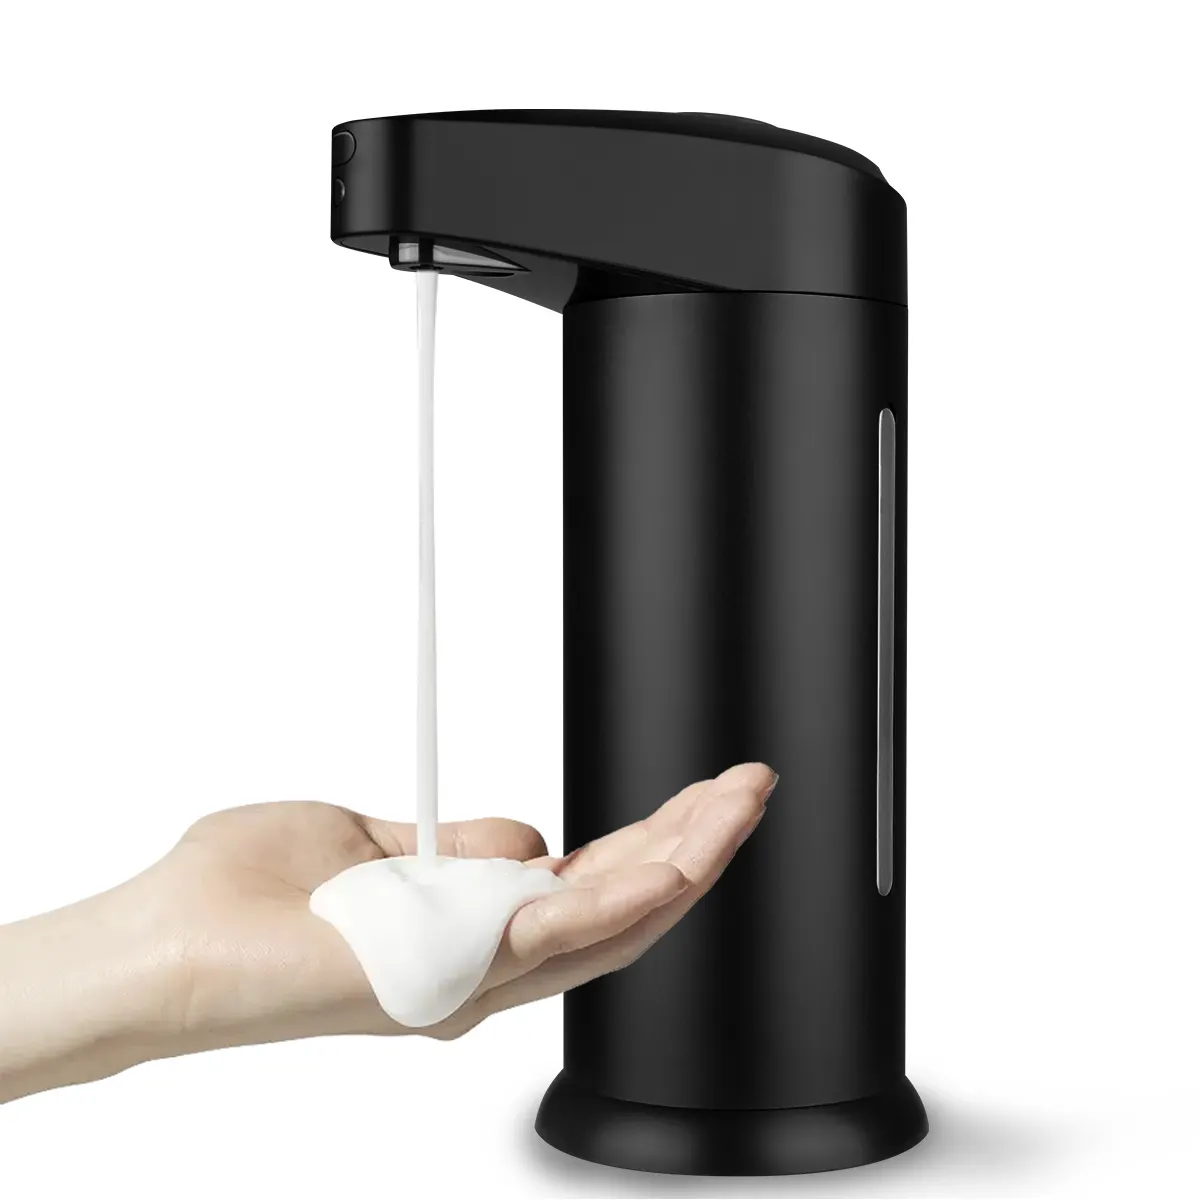 Dispensador automático de jabón, aerosol de Alcohol Hospital máquina desinfectante de manos dispensador de jabón sin contacto montado en la pared Sensor de movimiento